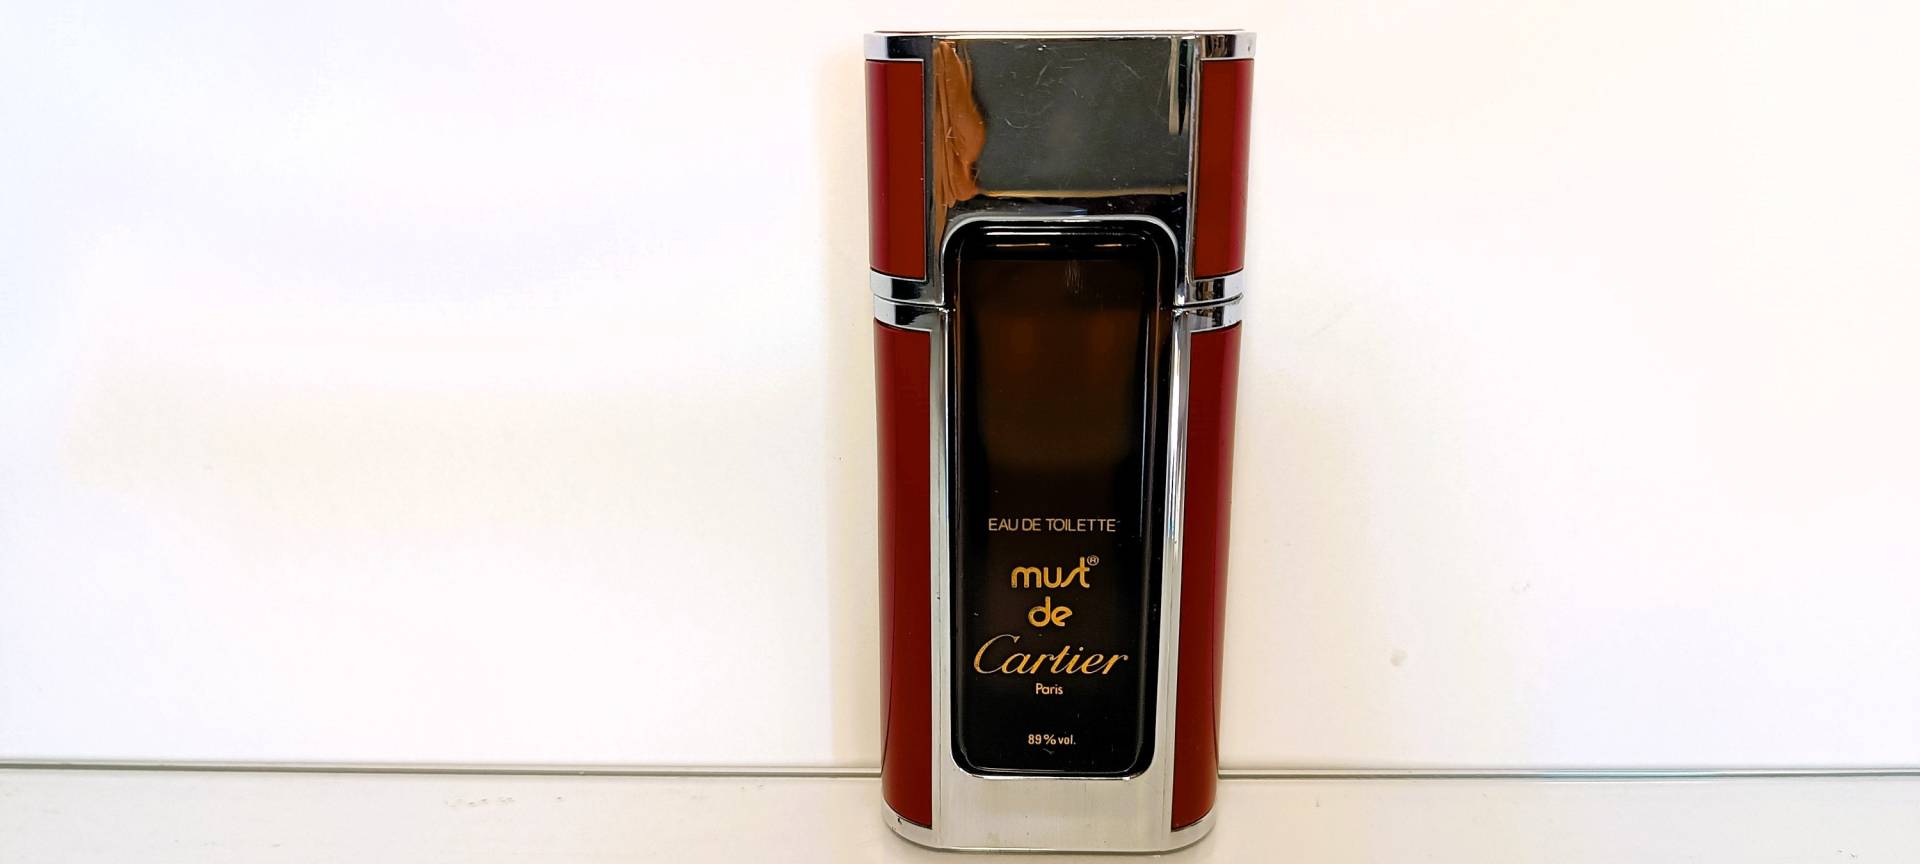 Must De Cartier 1981 Eau De Toilette 50 Ml 1 .7 Fl, Oz Parfüm Vintage Schwer Zu Finden Keine Box Geschenkidee Splash No Spray von Etsy - ItalianRetroBoutique